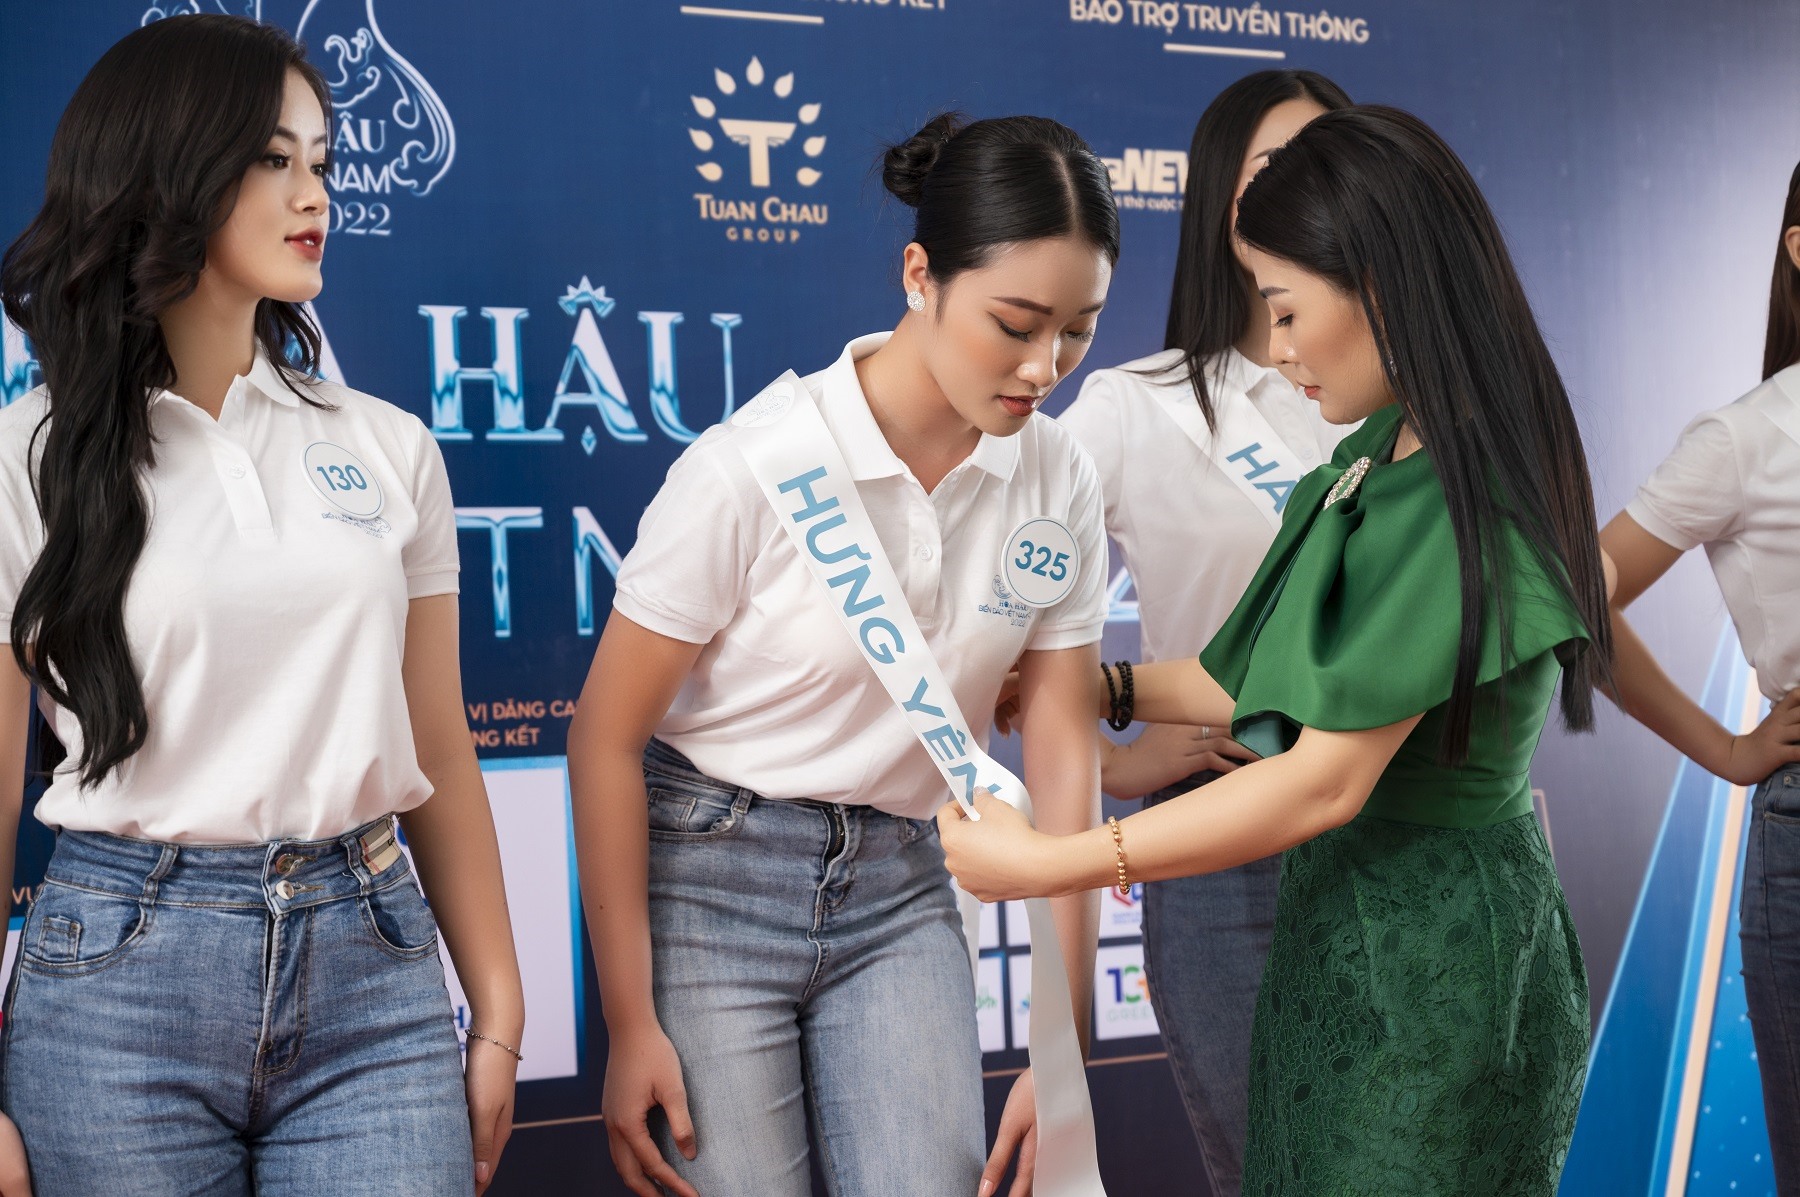 Top 50 thí sinh Hoa hậu Biển Đảo Việt Nam 2022 nhận sash từ ban tổ chức. Ảnh: BTC.